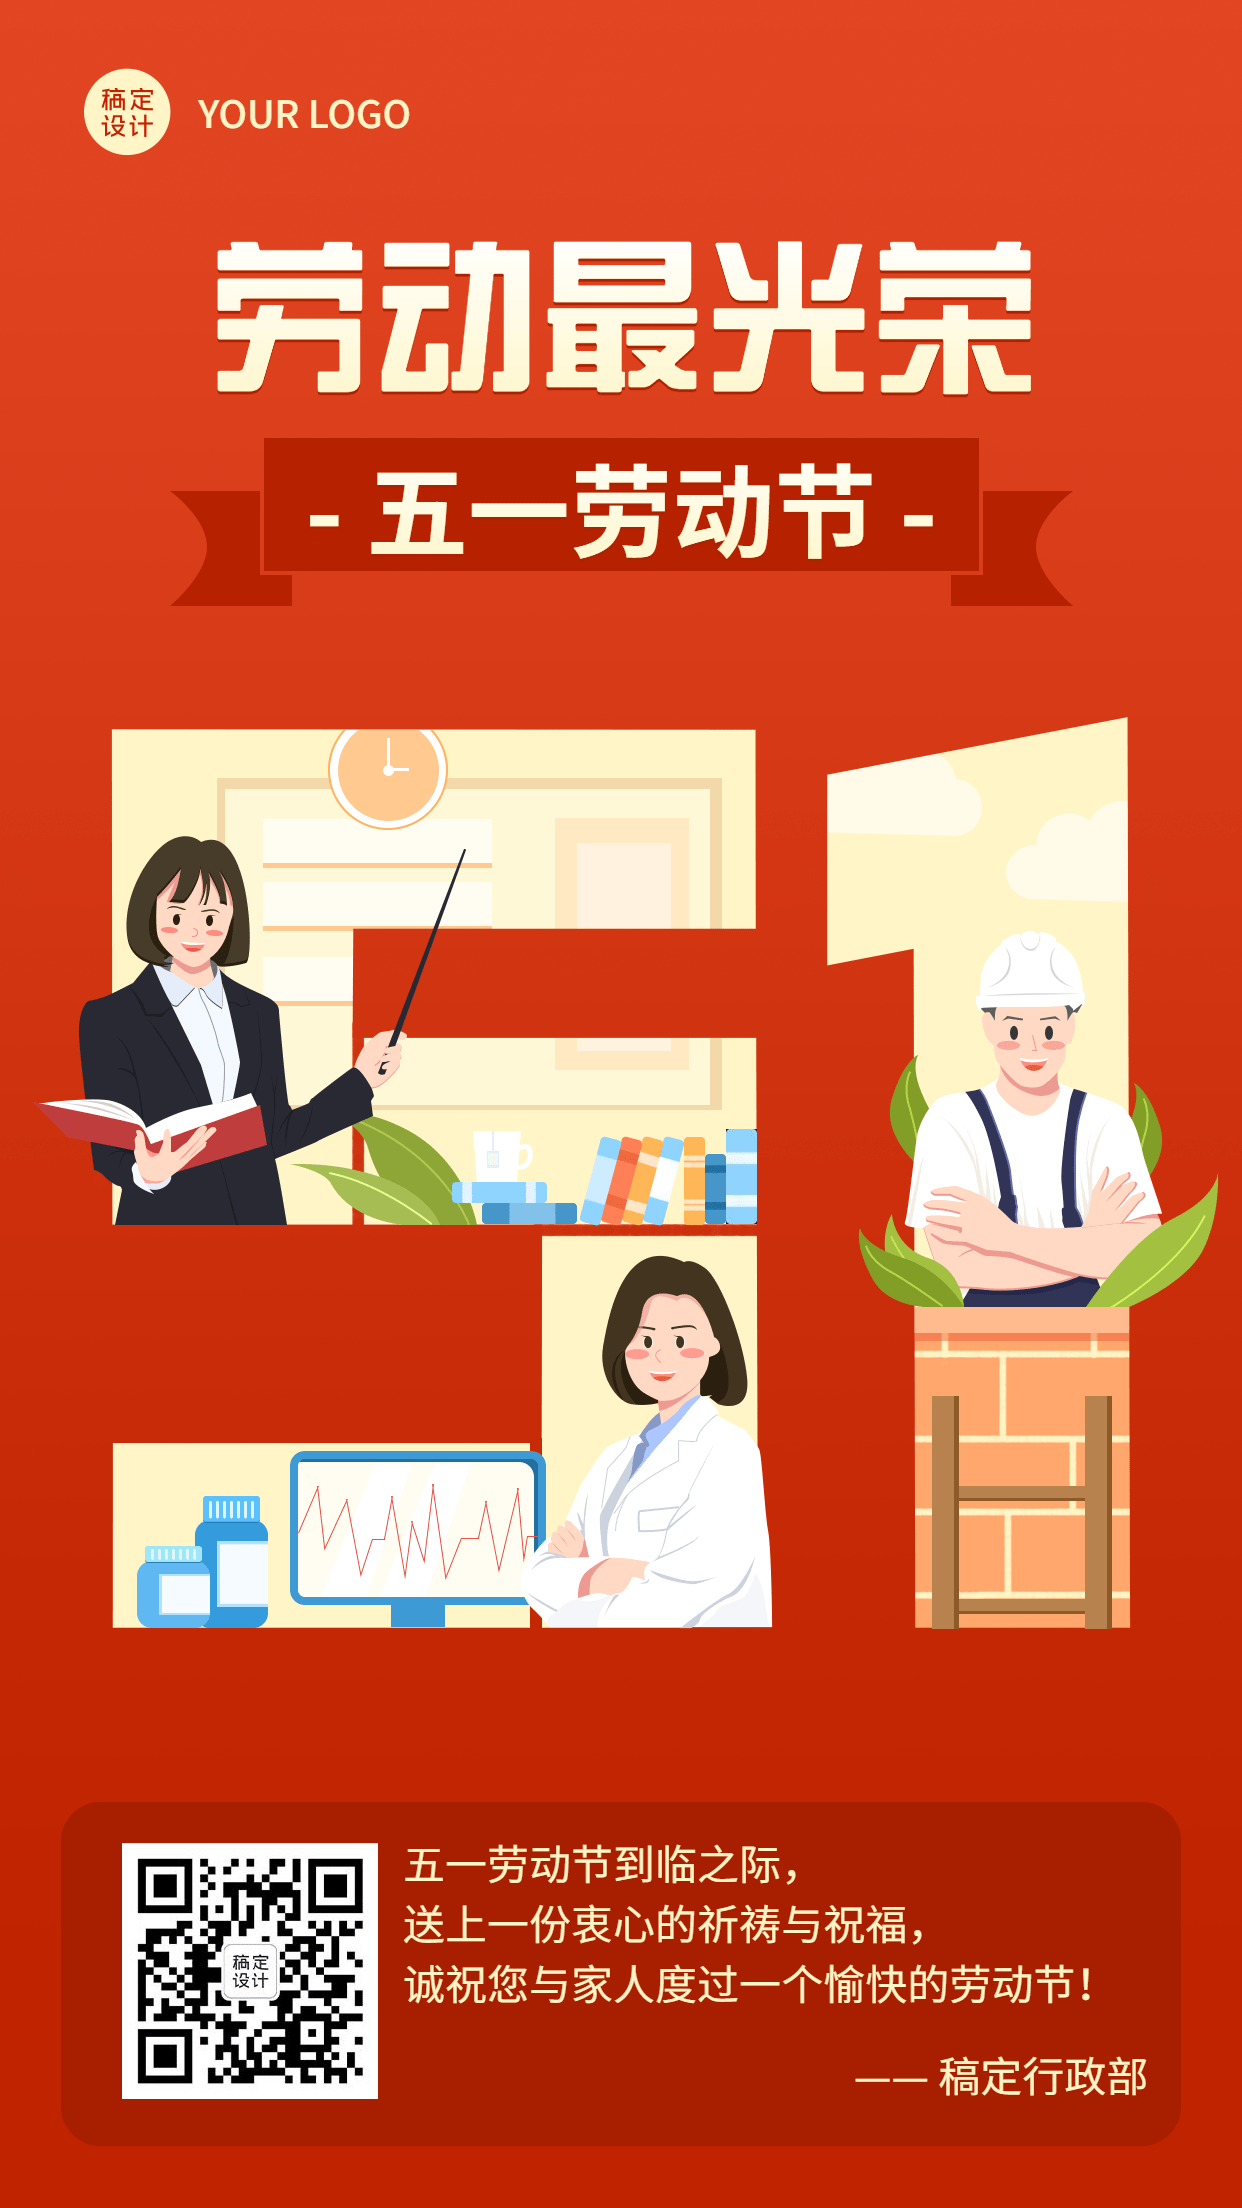 五一劳动节电子贺卡企业节日祝福问候海报